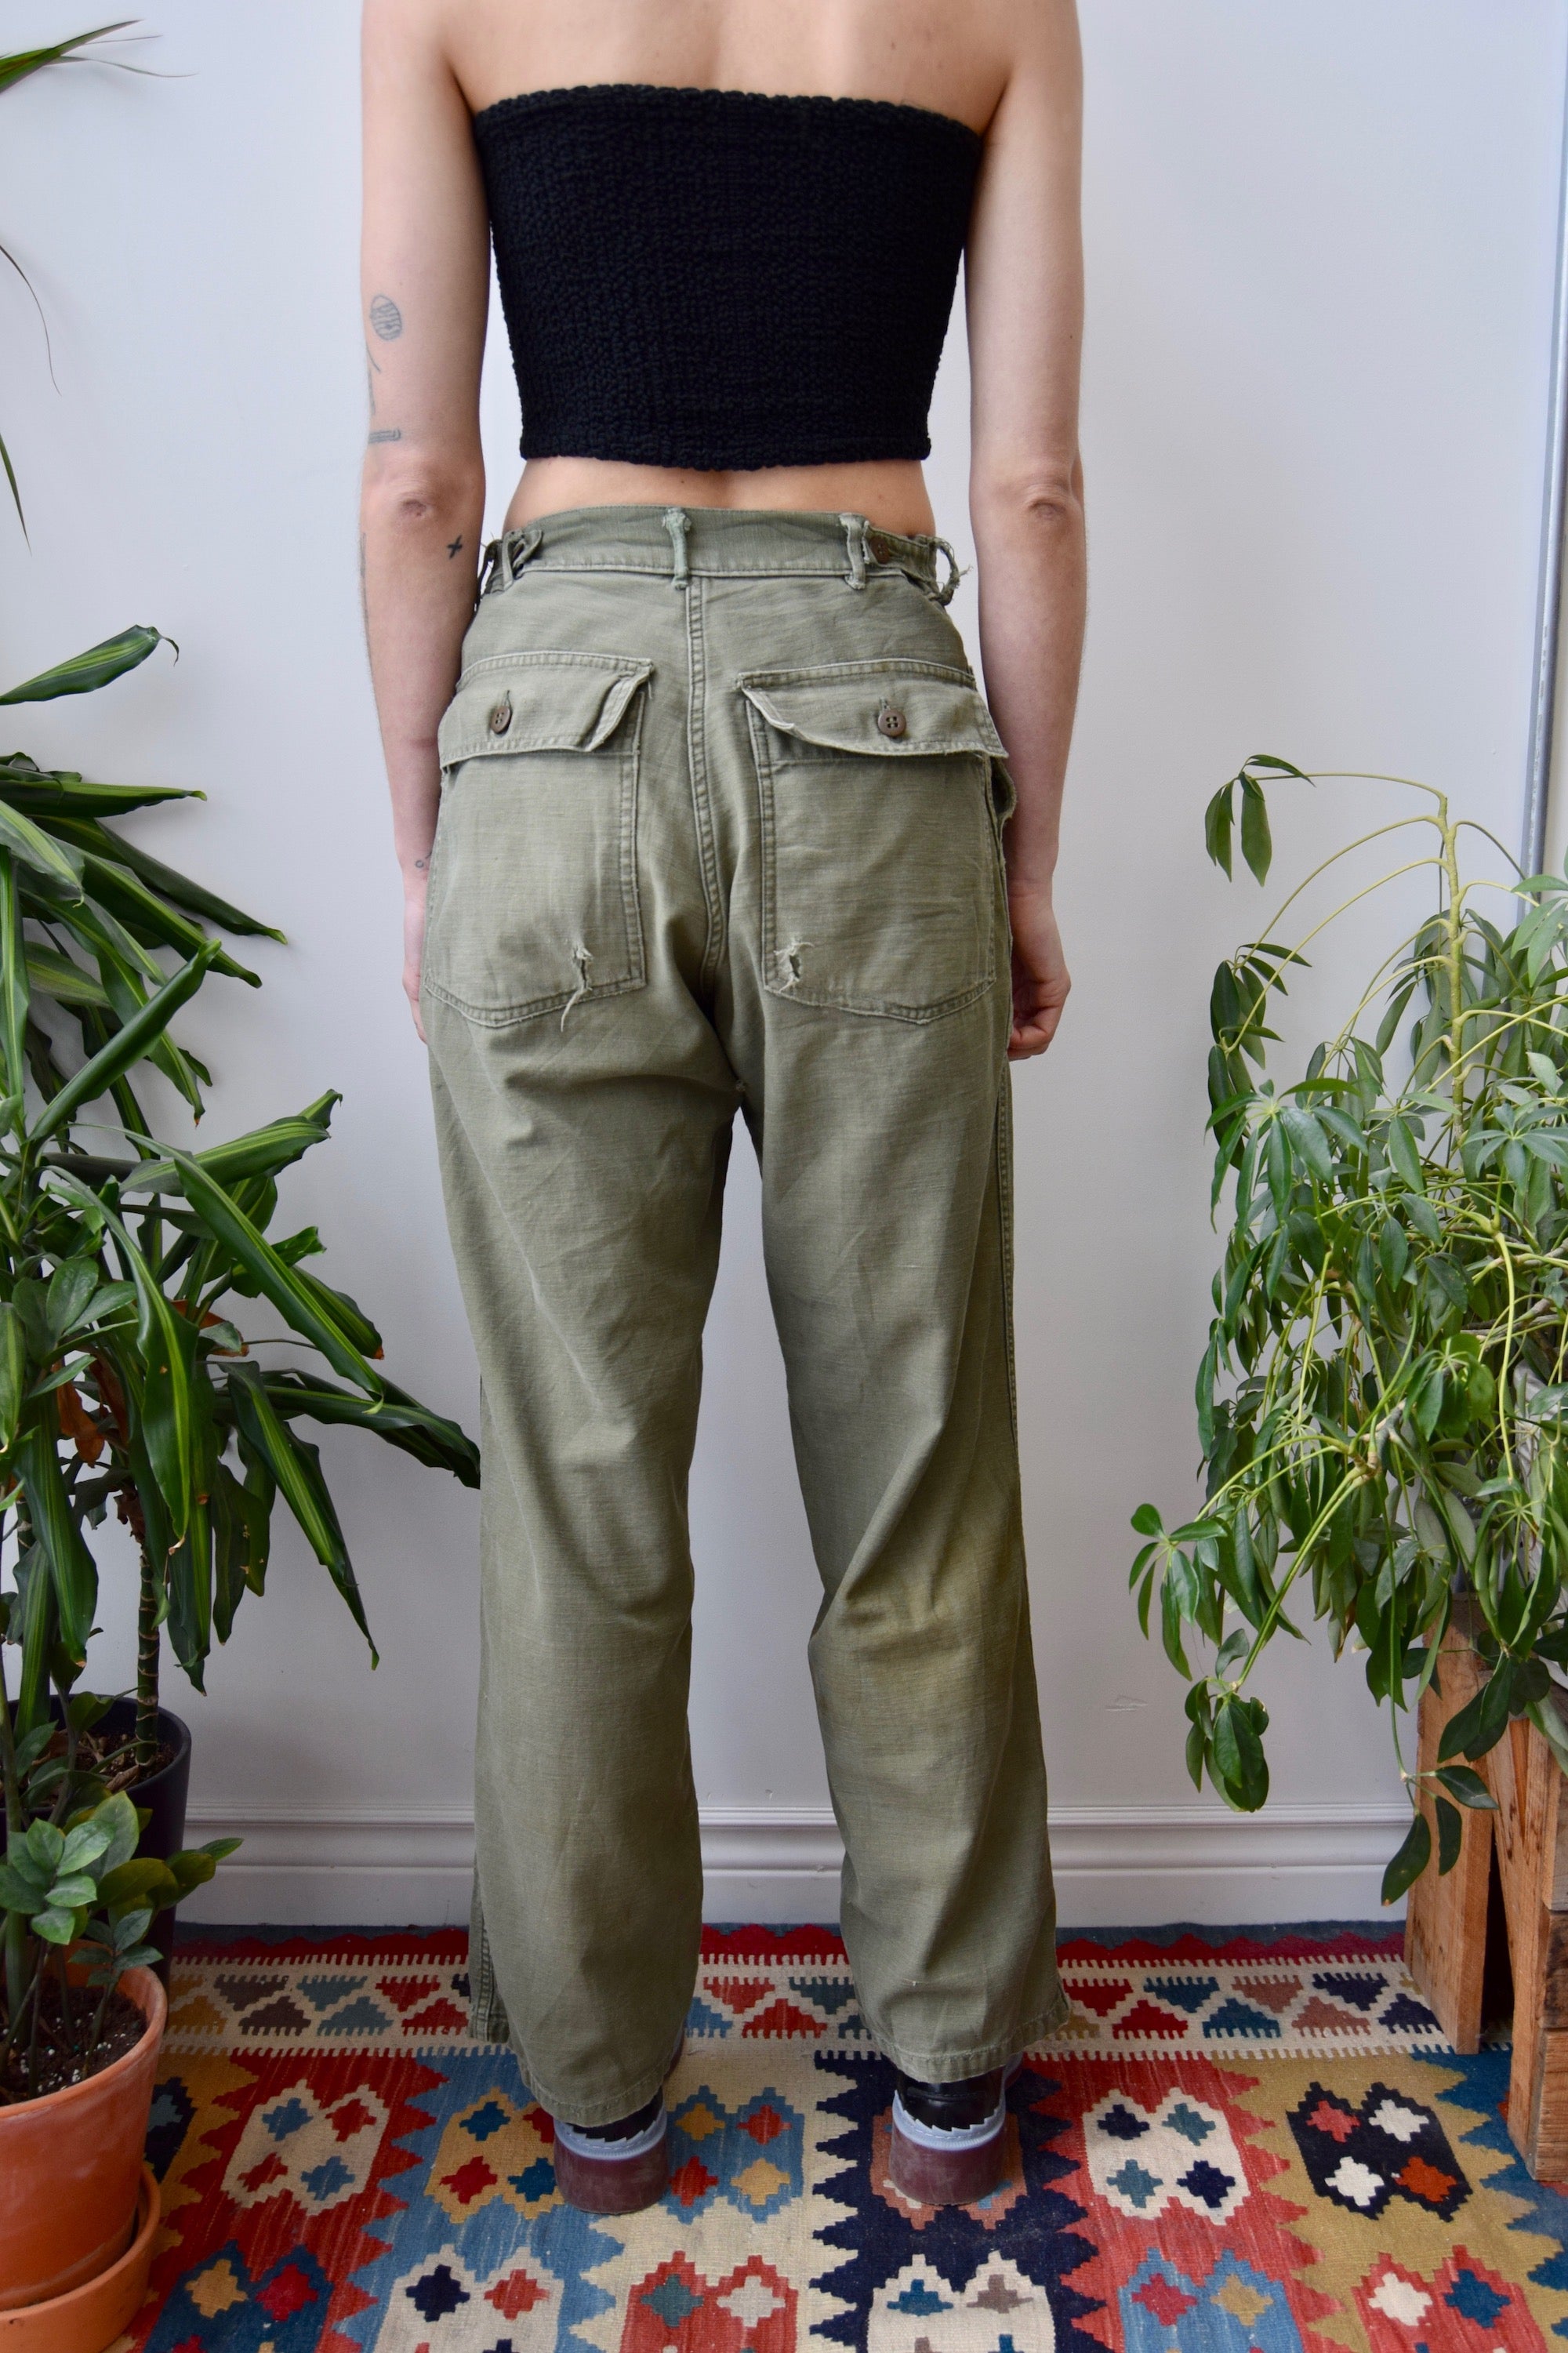 Worn Vintage Army Pants